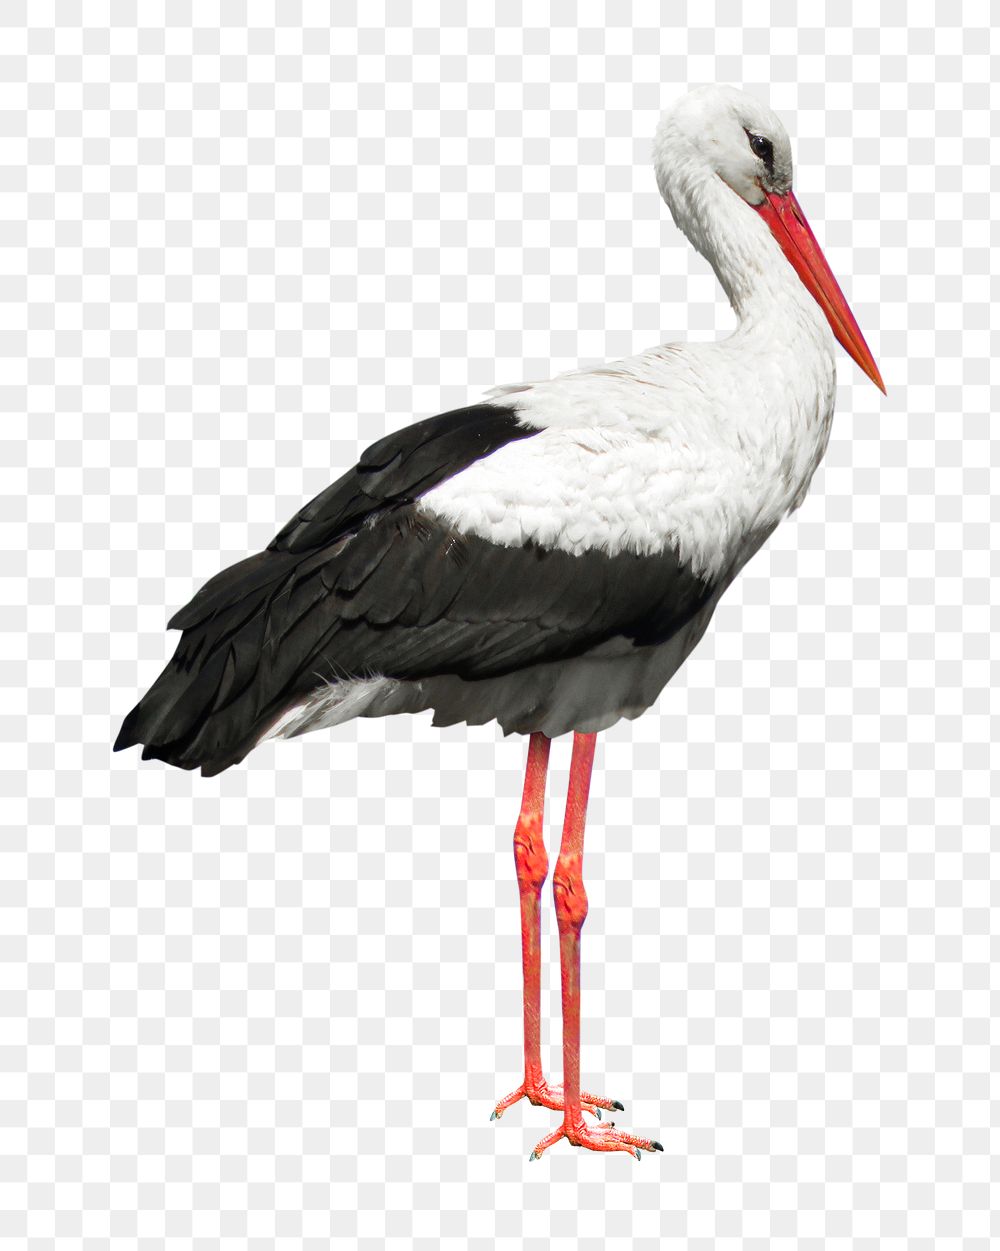 Stork png collage element, transparent background